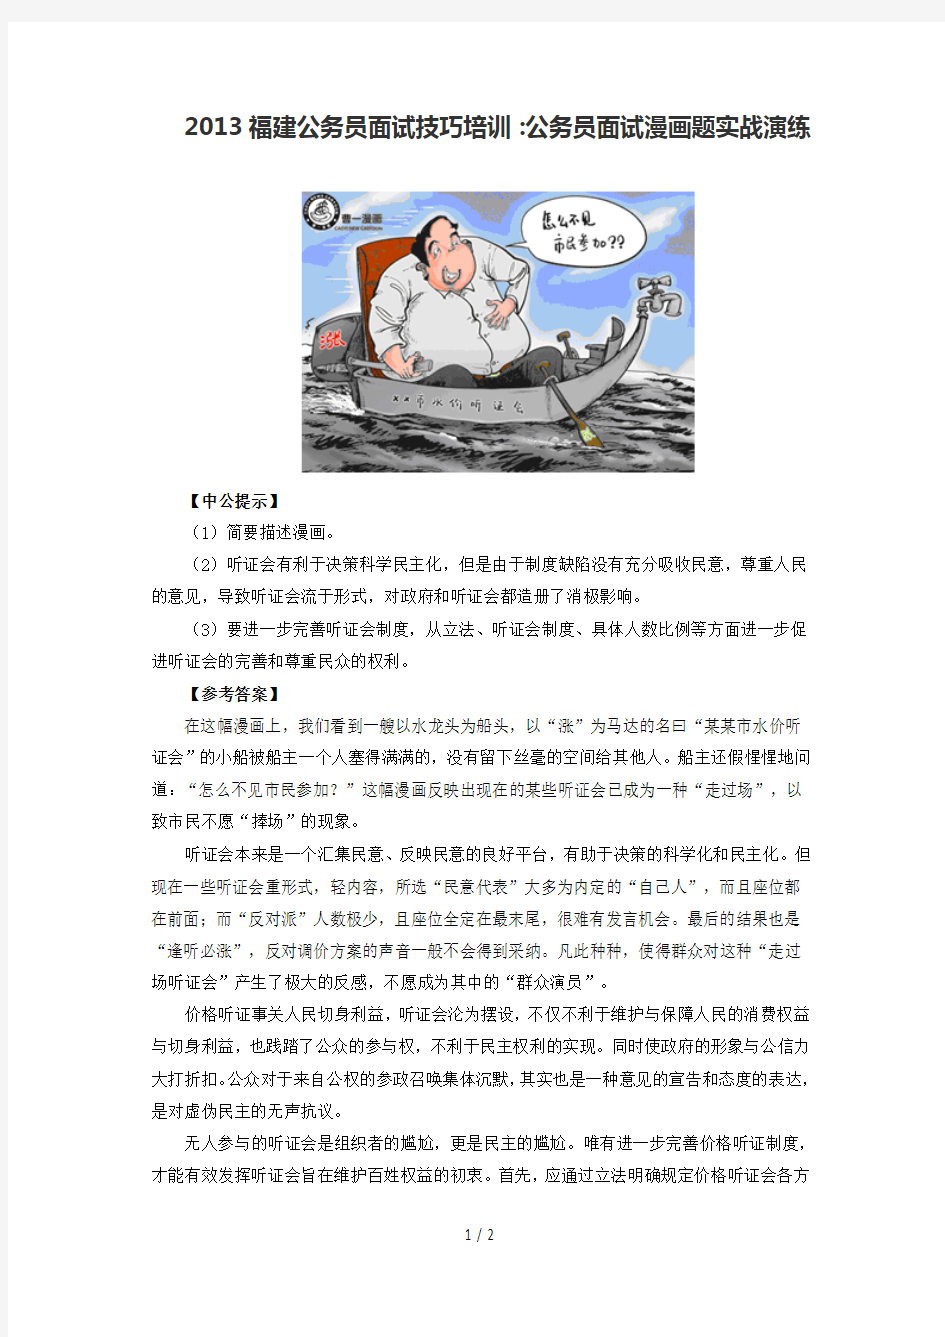 福建南平公务员面试模拟漫画题